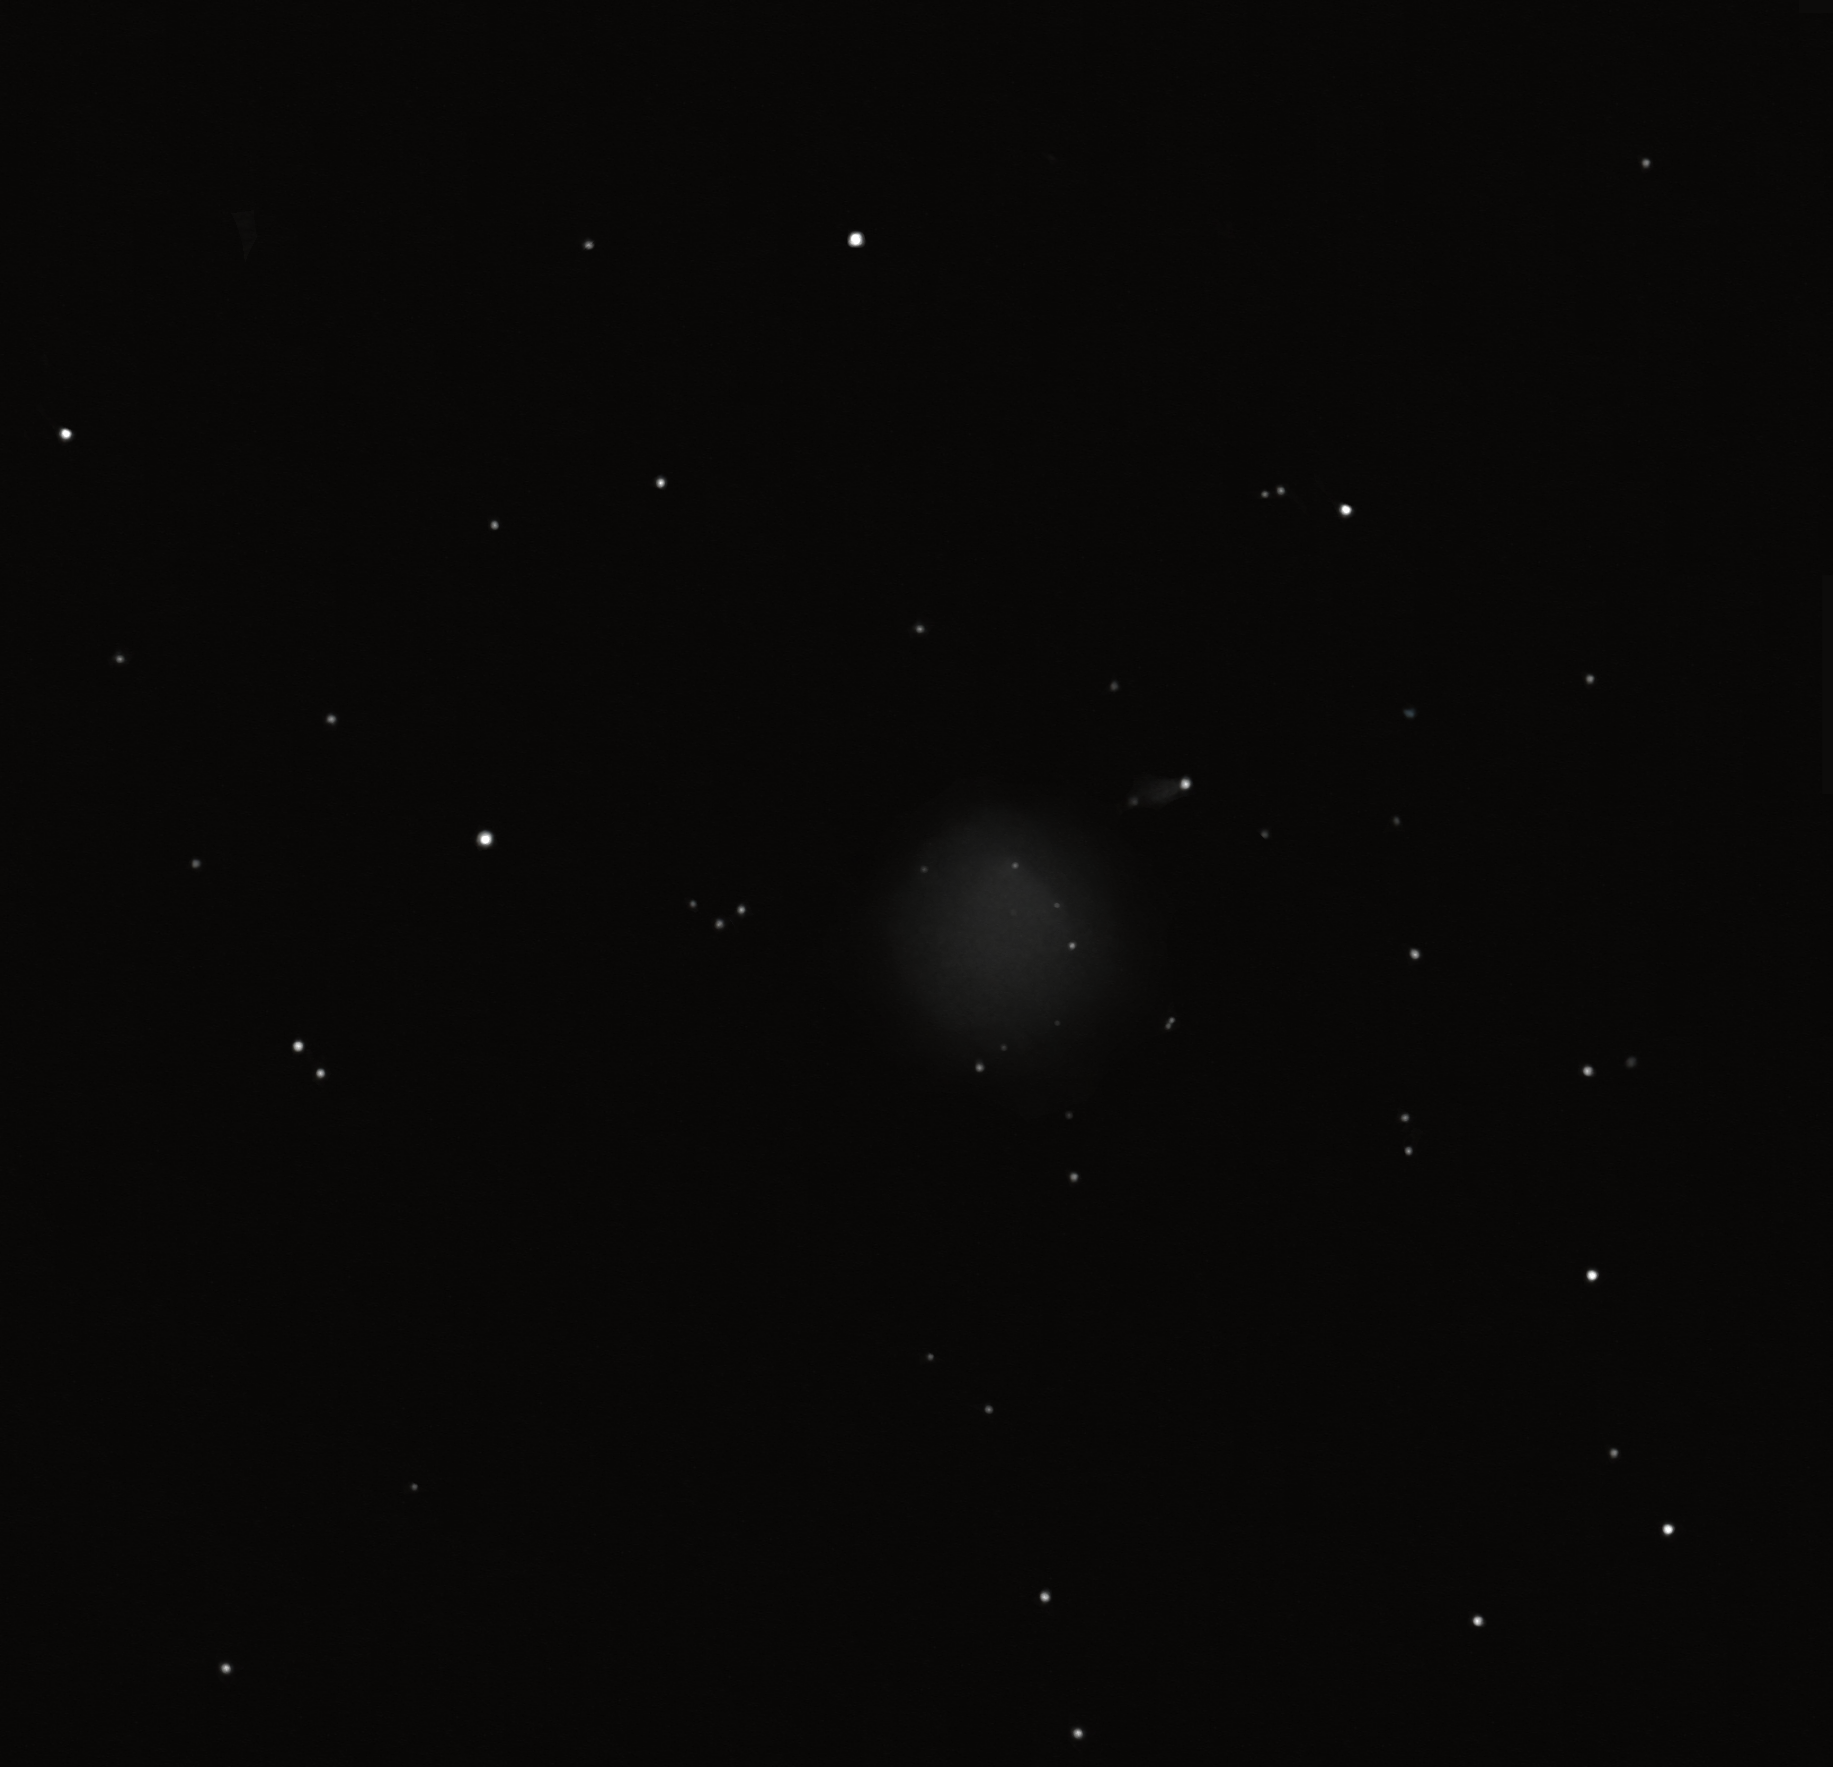 palomar 8 globular cluster